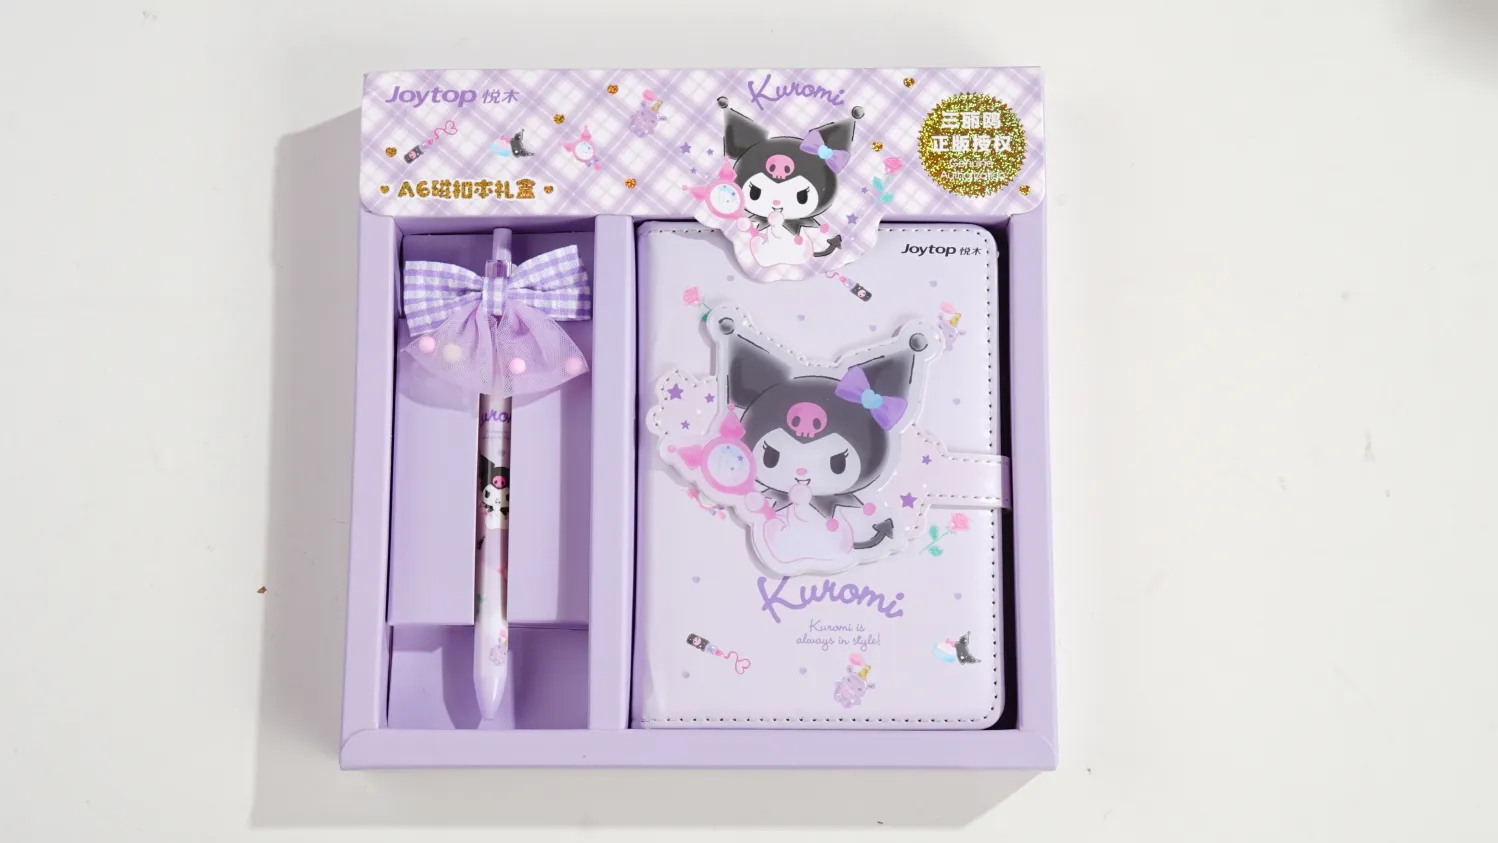 El juego de regalo Joytop SR 101017 al por mayor kuromi kawaii incluye un cuaderno diario con hebilla magnética A6 y bolígrafo de gel para niños